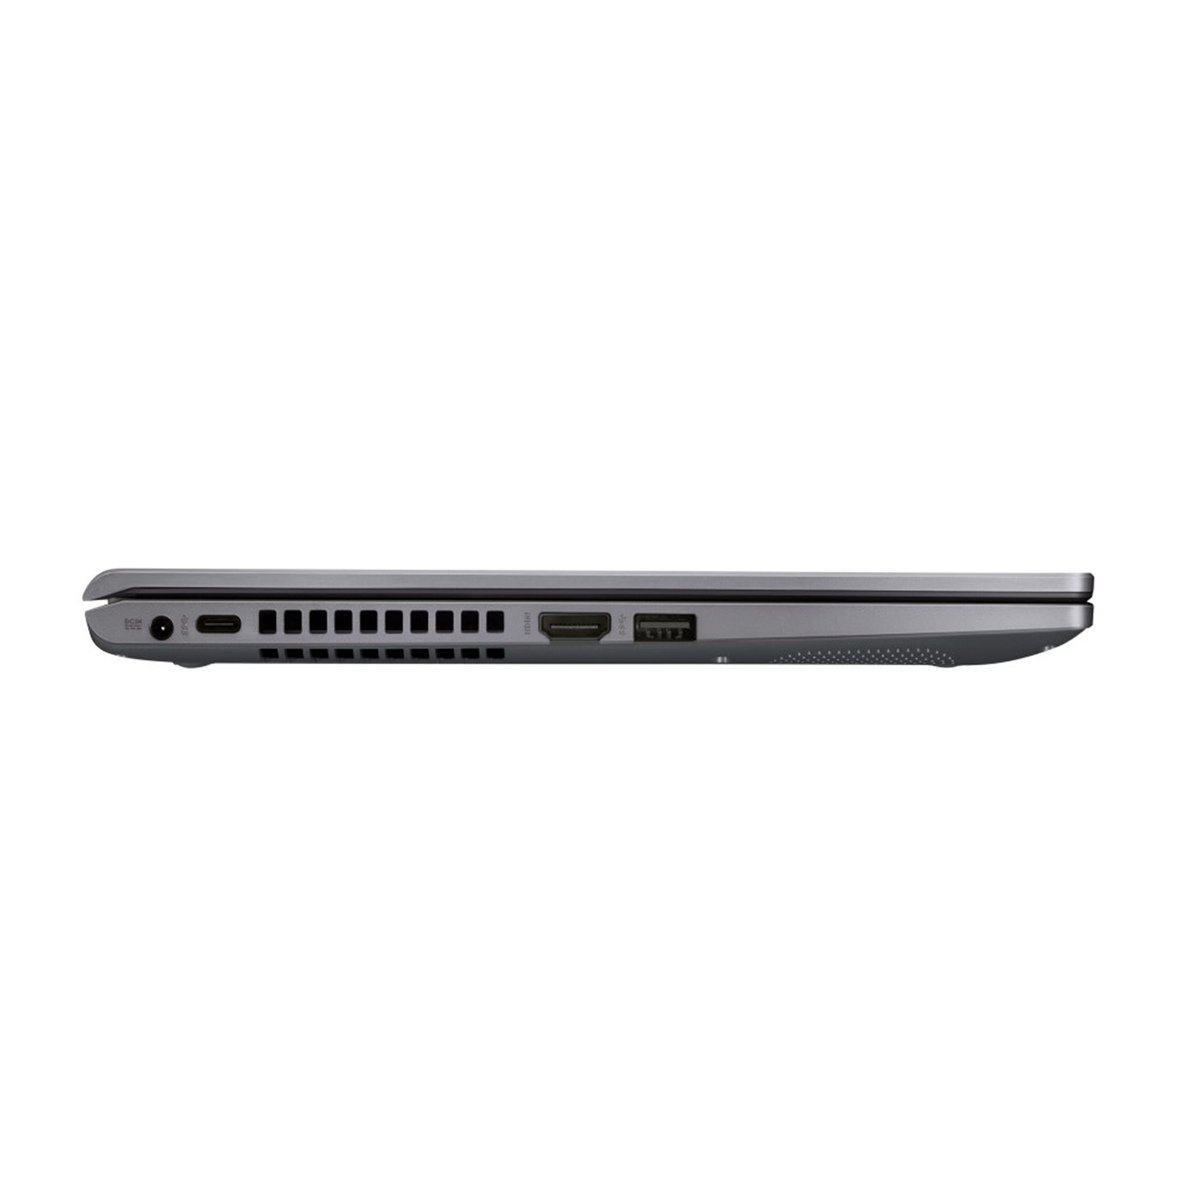 أسوس لاب توب X409FA-EK589T - شاشة 14 بوصة عالية الدقة ، الجيل العاشر انتل كور i3-10110U ، 4 جيجابايت رام ، 256 SSD ، انتل بطاقة رسومات دقة عالية ، رمادي داكن